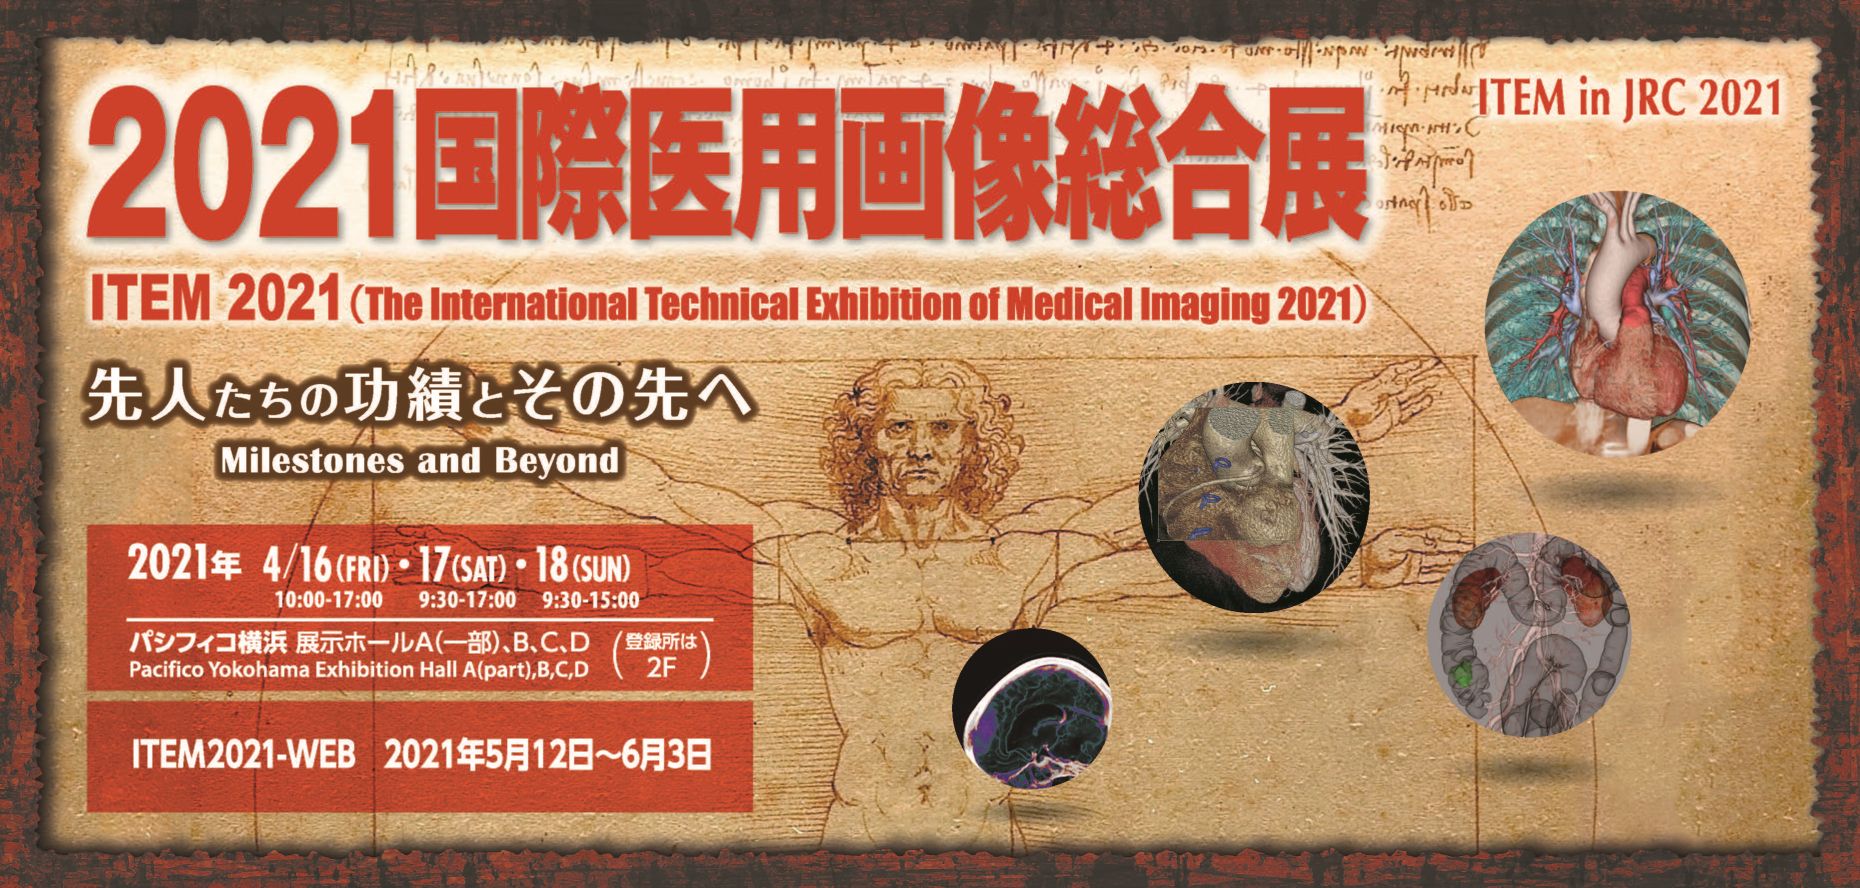 2021国際医用画像総合展（ITEM in JRC 2021）に出展します。